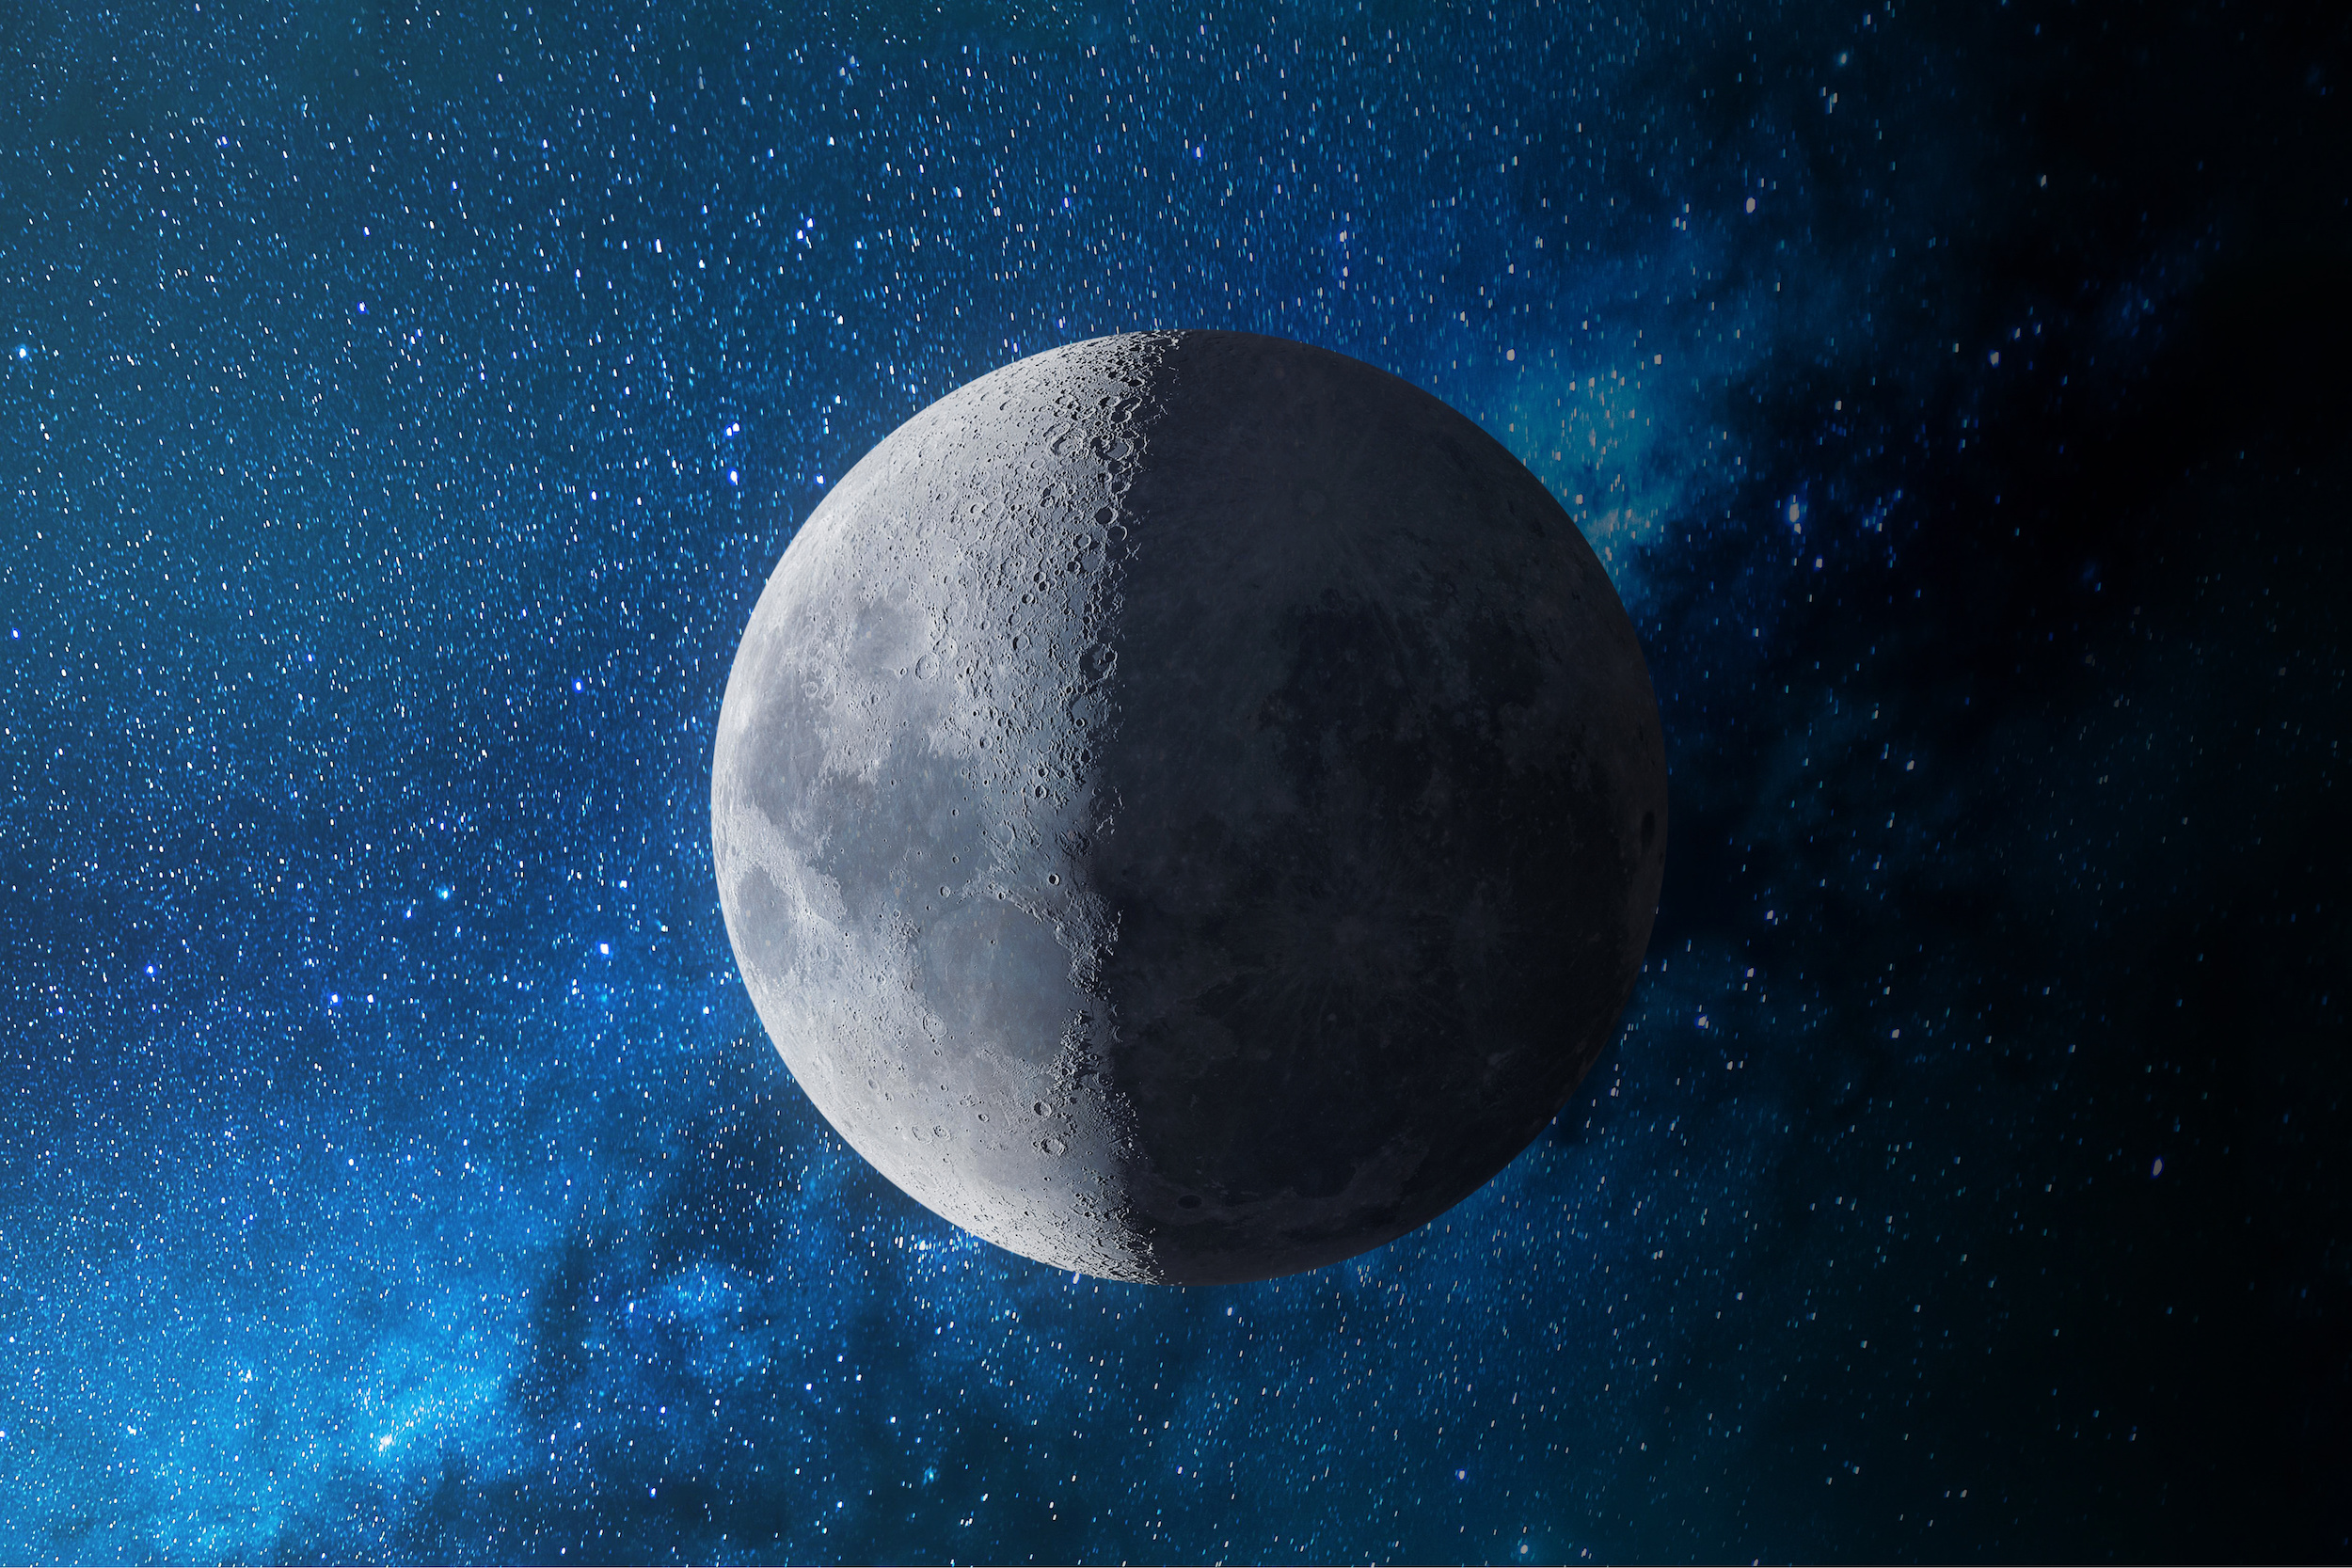 Les mers lunaires possède une composition minéralogique qui témoignent du retournement du manteau lunaire. © Turgut, Adobe Stock